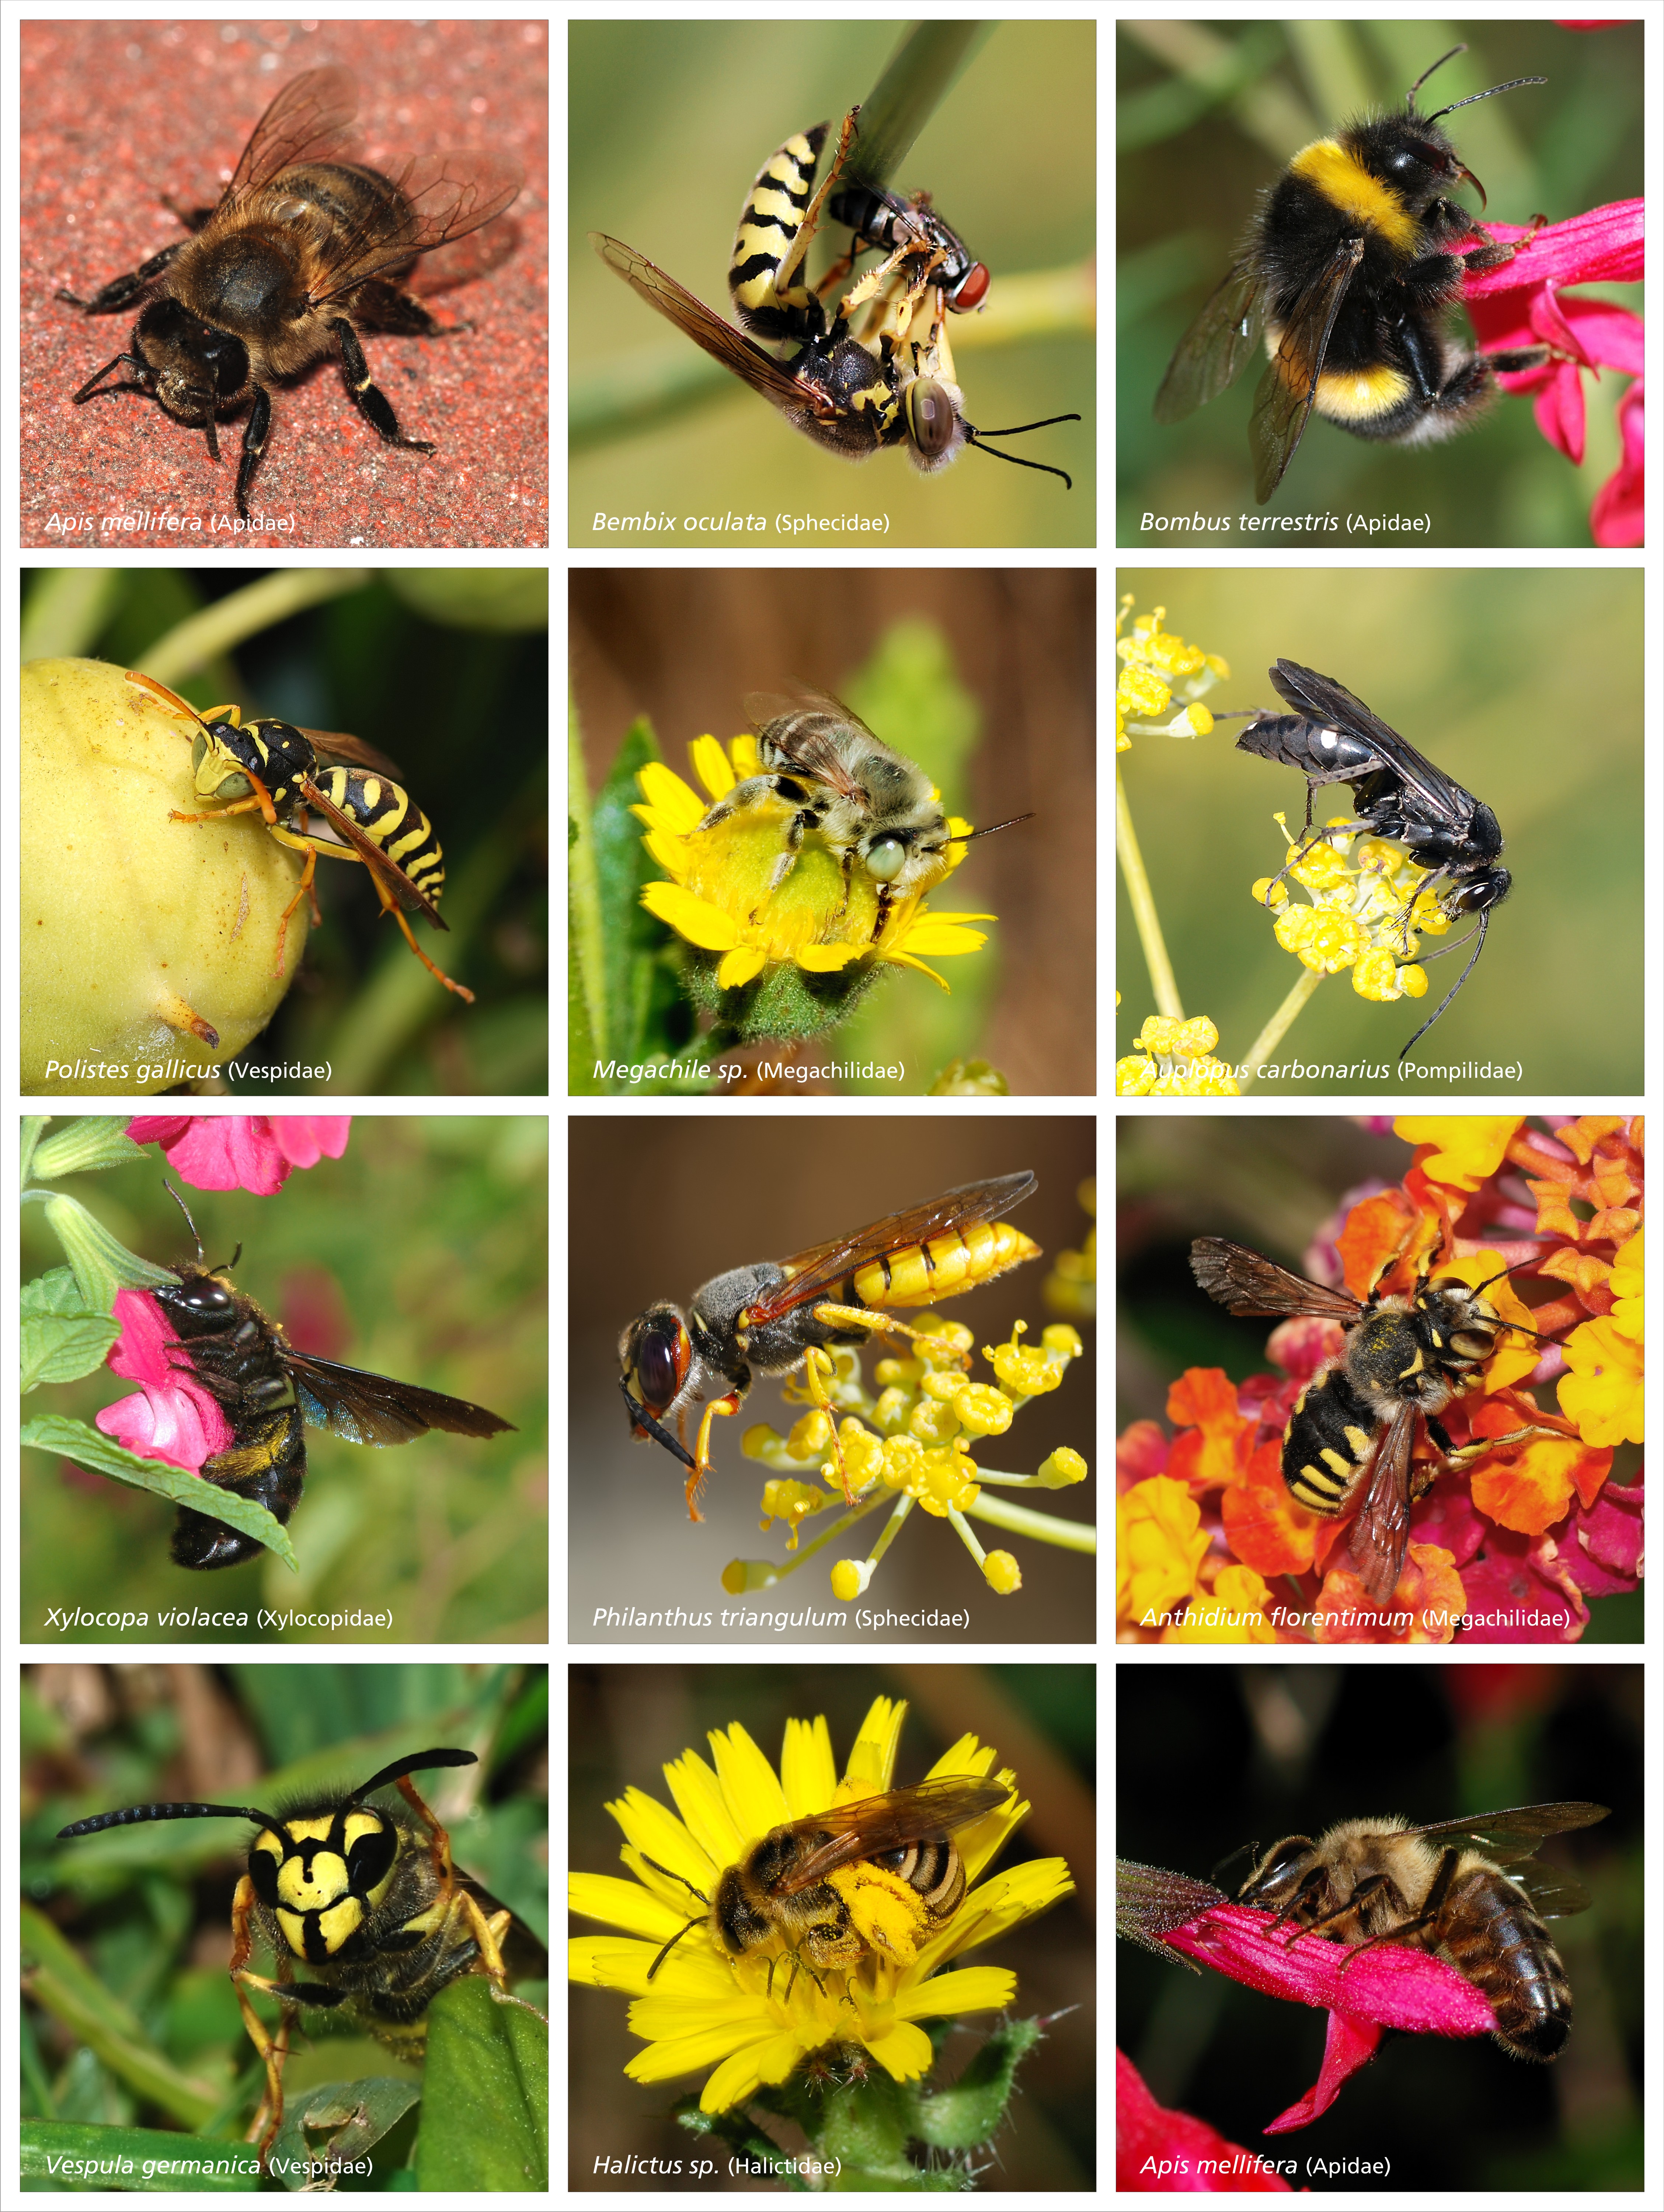 Bees_and_Wasps.jpg